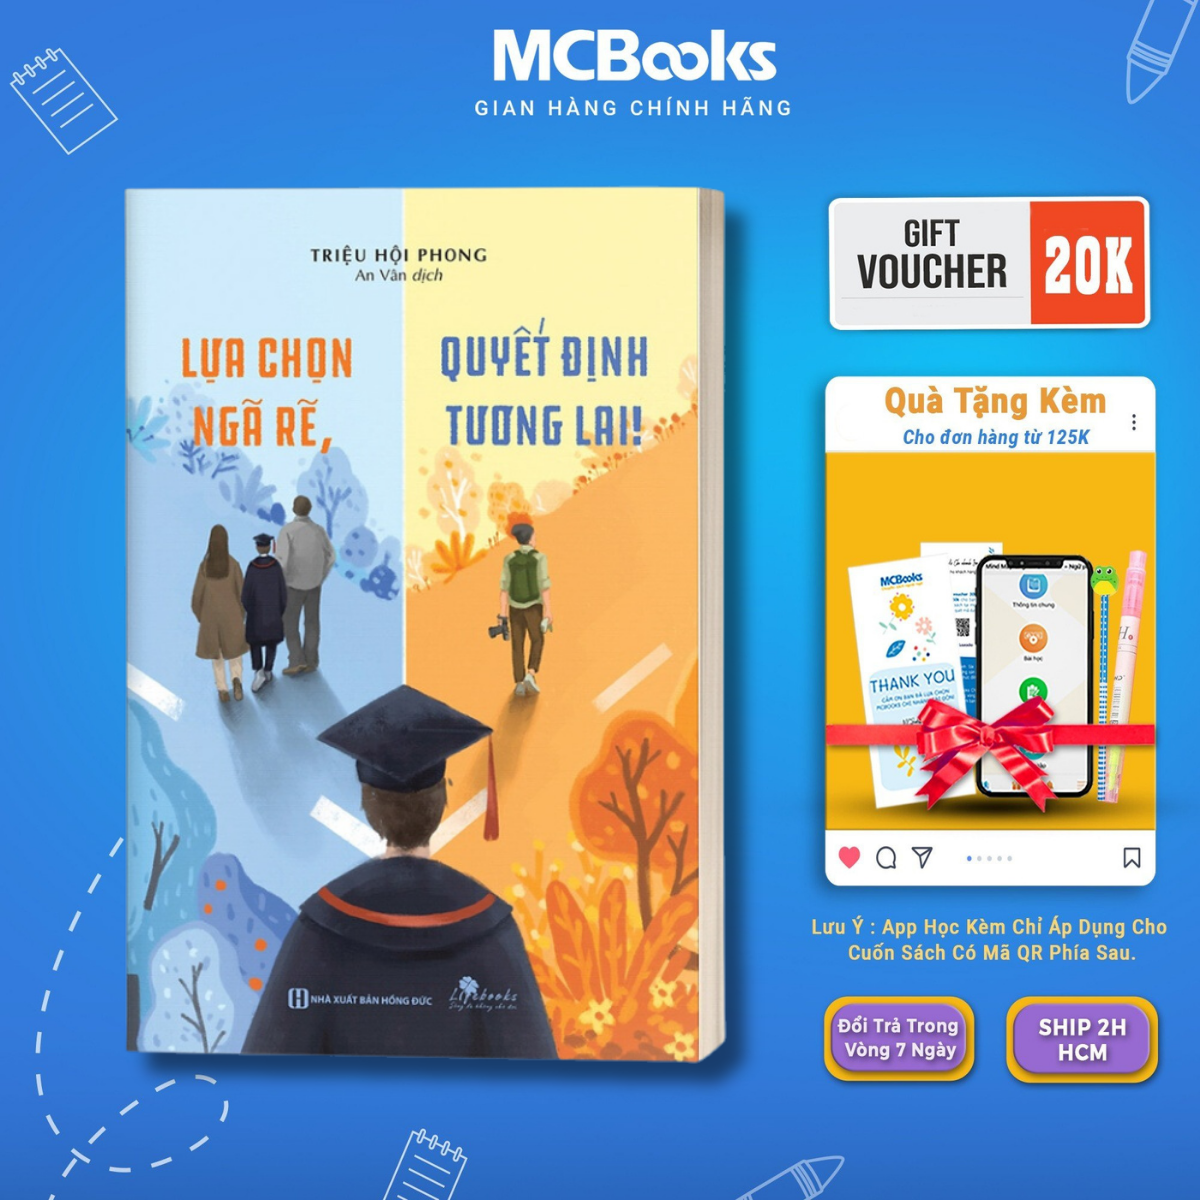 Sách - Lựa chọn ngã rẽ, quyết định tương lai - McBooks